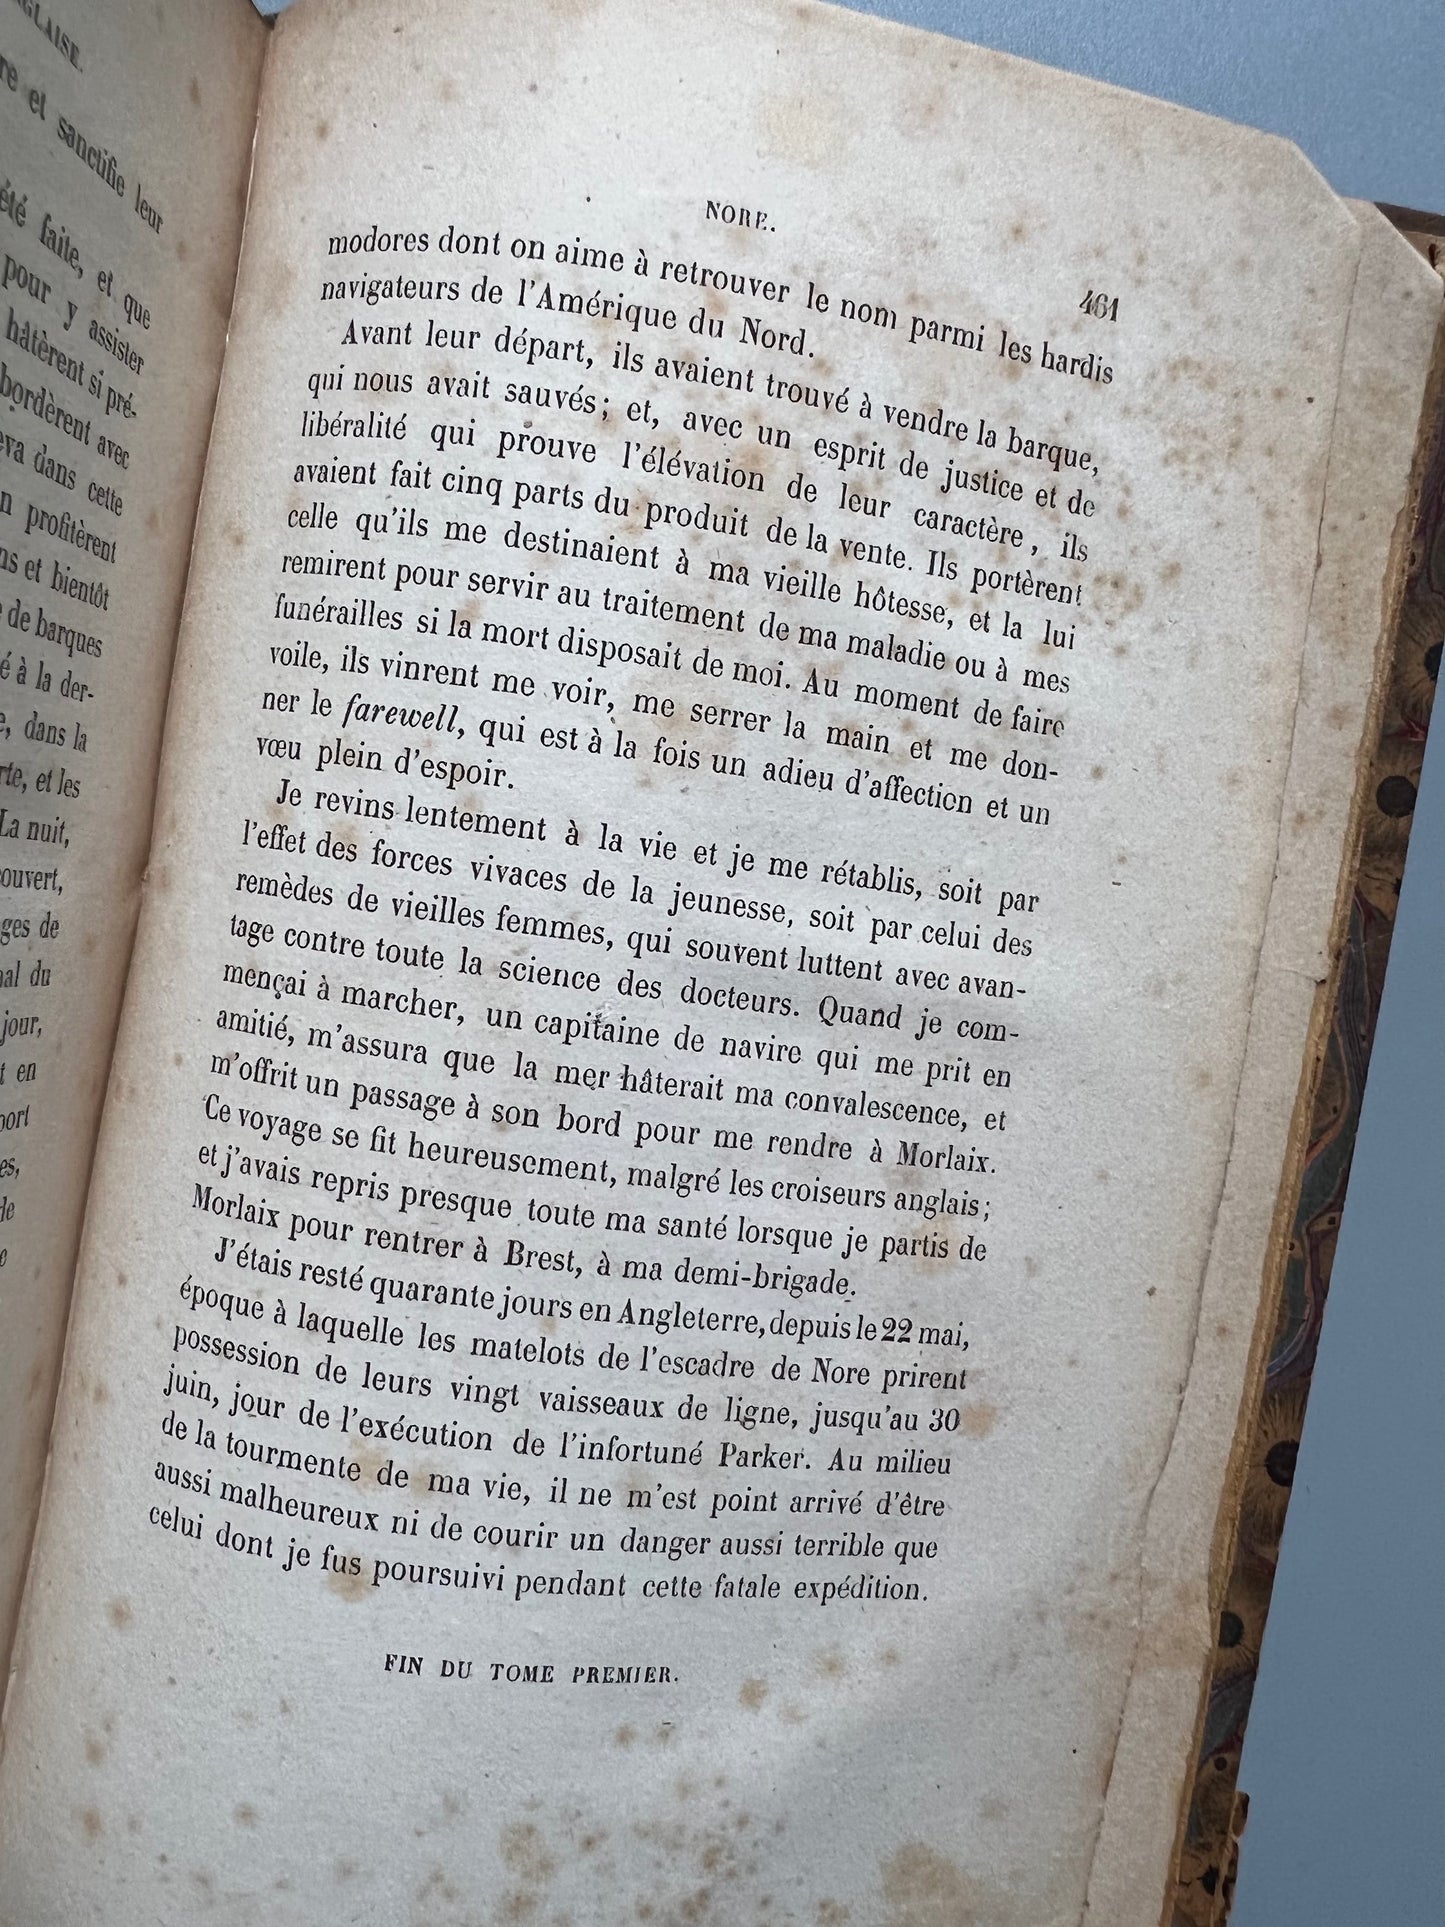 Aventures de guerre au temps de la république et du consulat, M. A. Moreau de Jonnès (tomo I) - Pagnerre libraire-èditeur, 1858